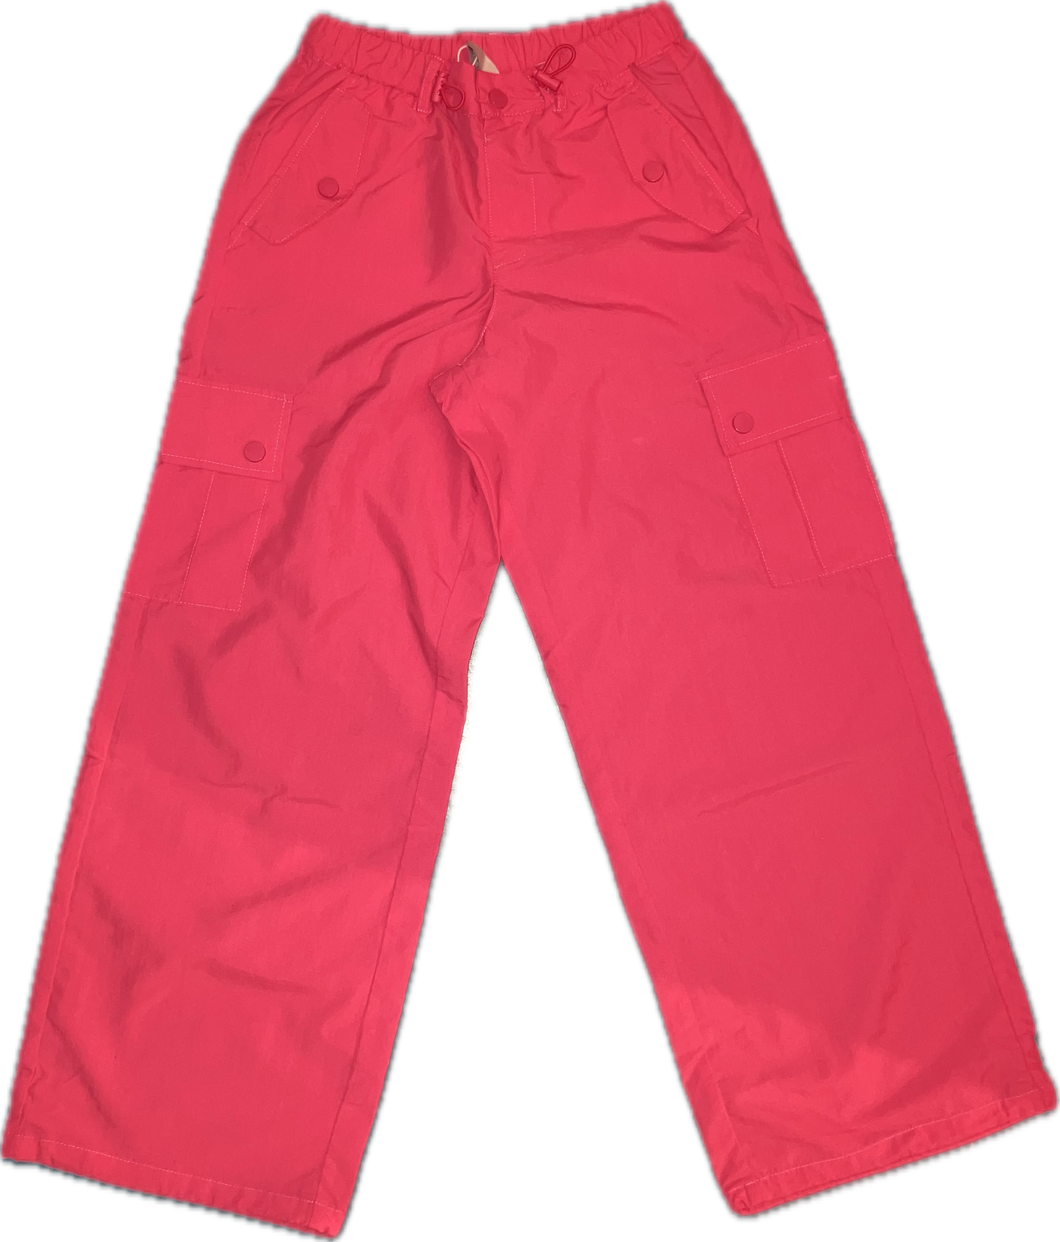 Pink Parachute Cargo Pants